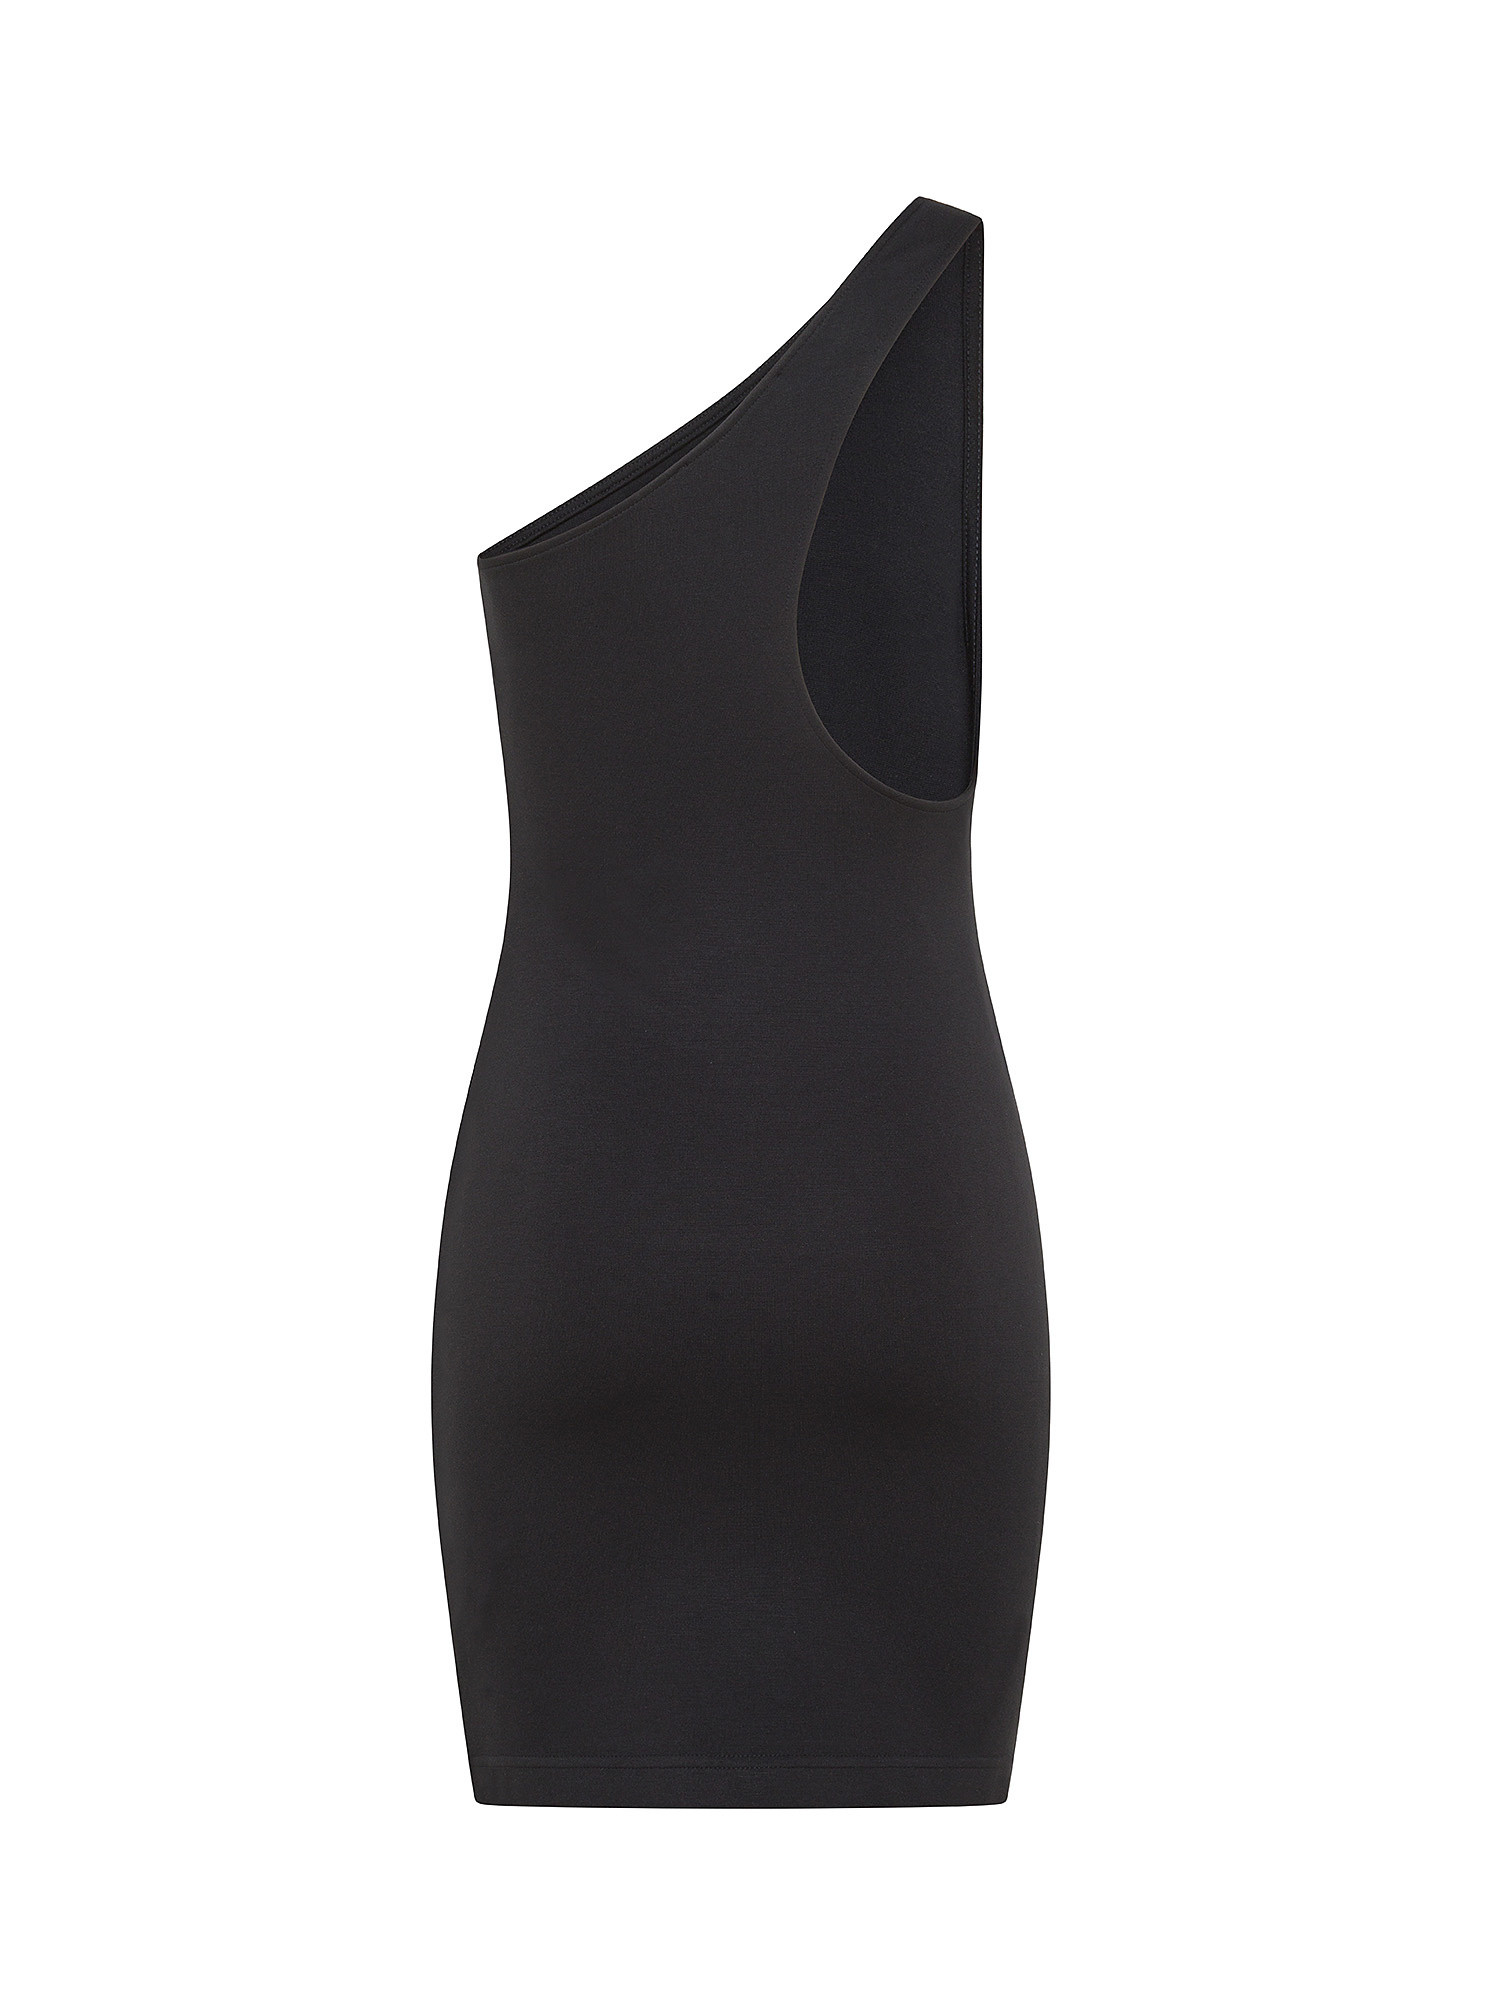 Calvin Klein Jeans - One Shoulder Dress In Jersey, Black, large image number 1